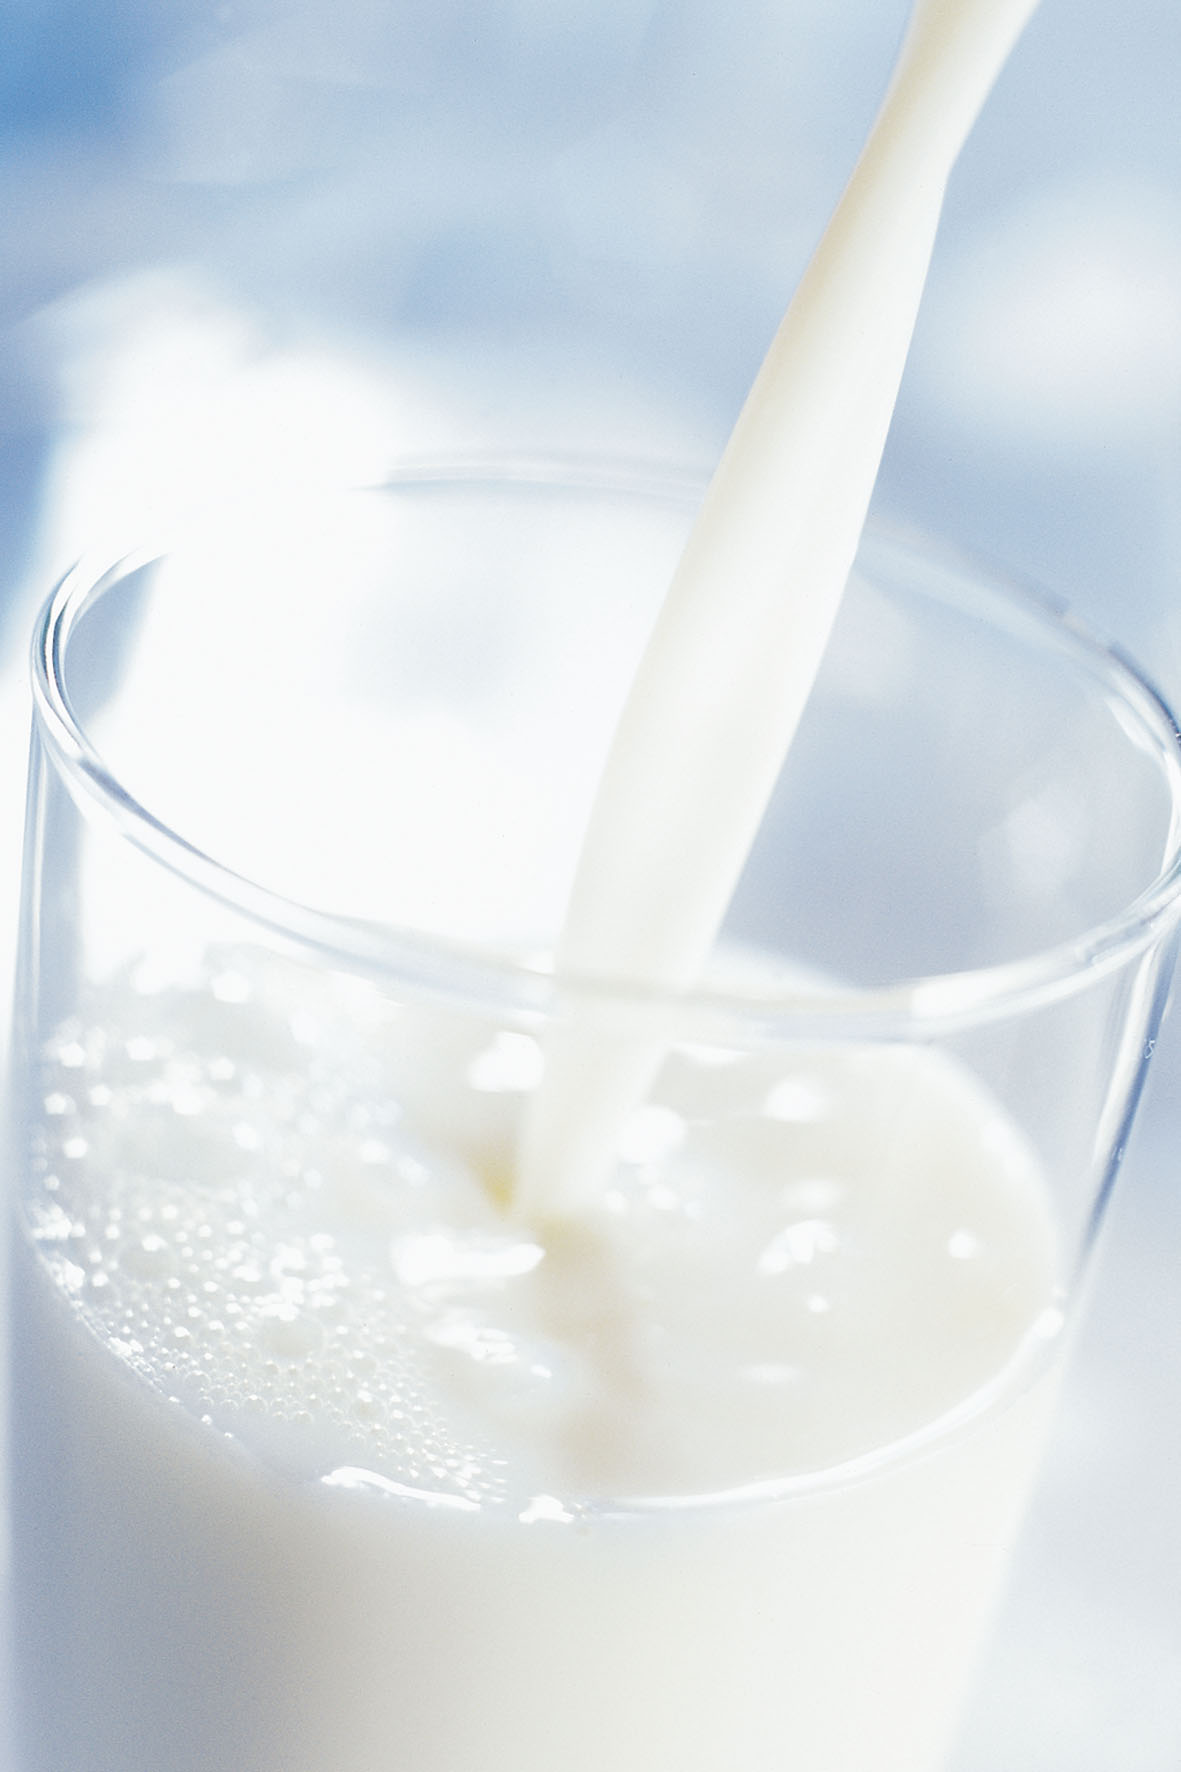 Biomilch wird immer beliebter - kein Wunder, denn Studien belegen gesundheitliche Vorteile gegenüber konventionell erzeugter Milch.